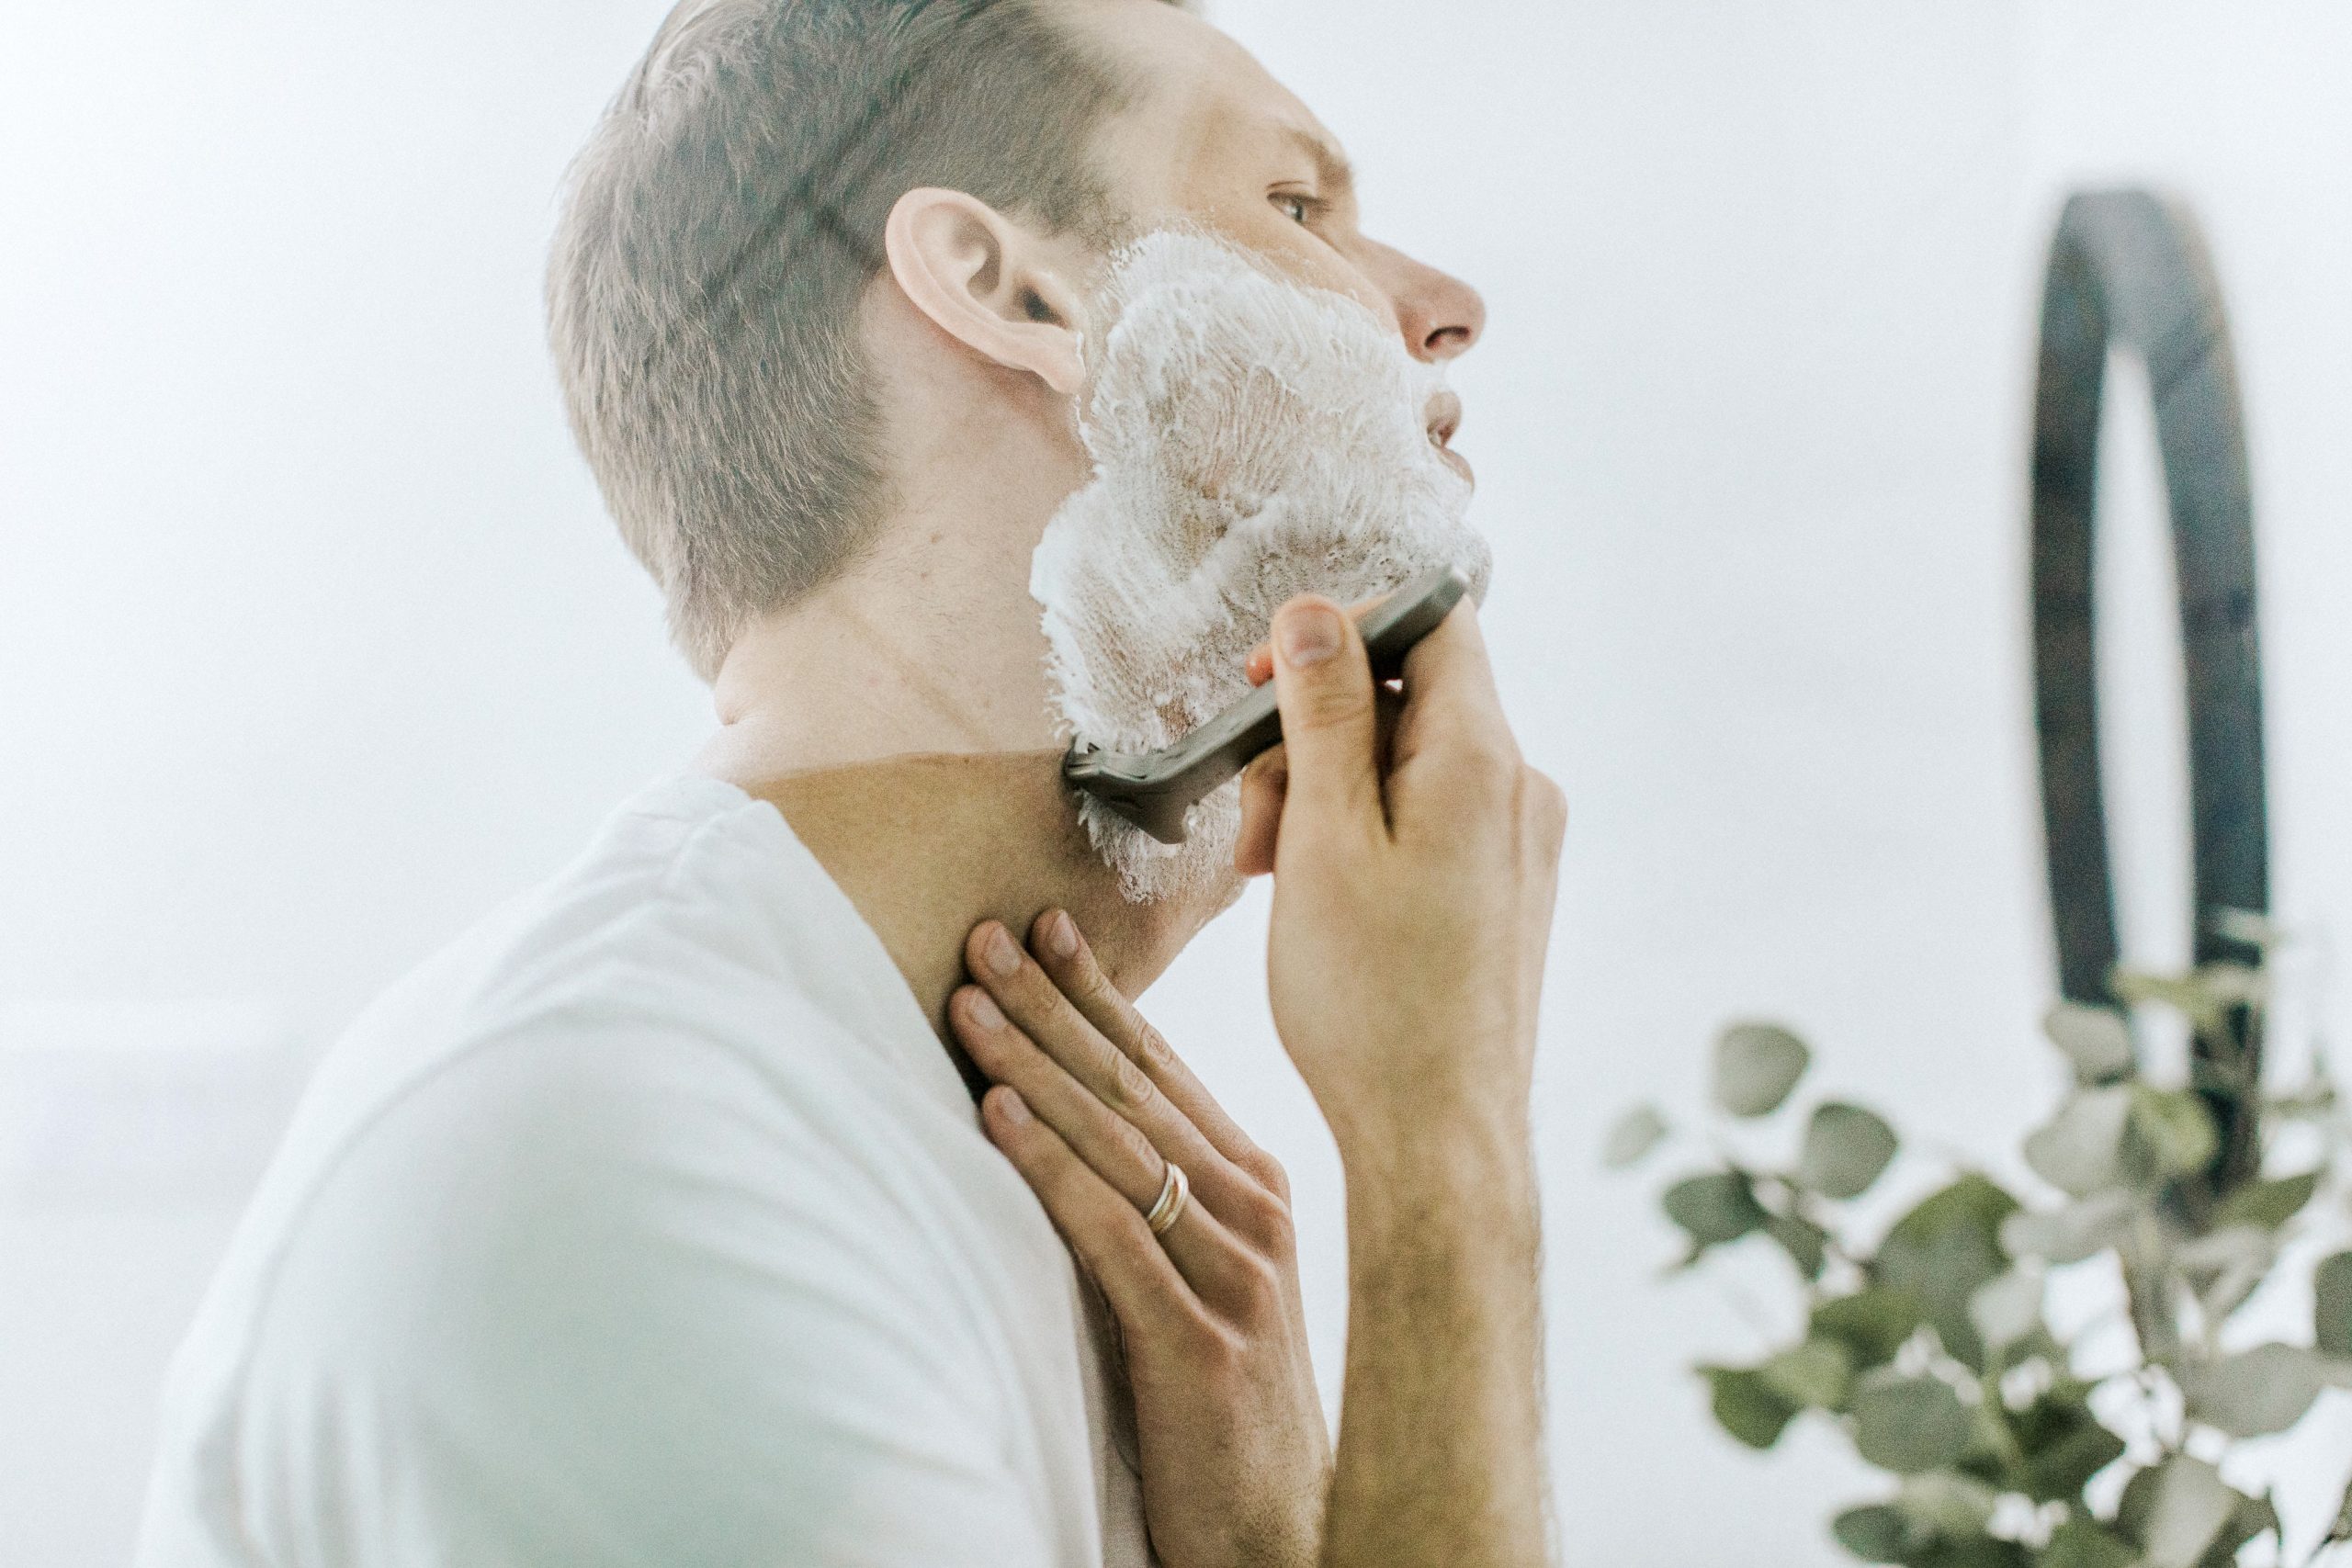 Pickel im Bart – was tun? Mit diesen 9 Tipps wirst du Bartpickel los!